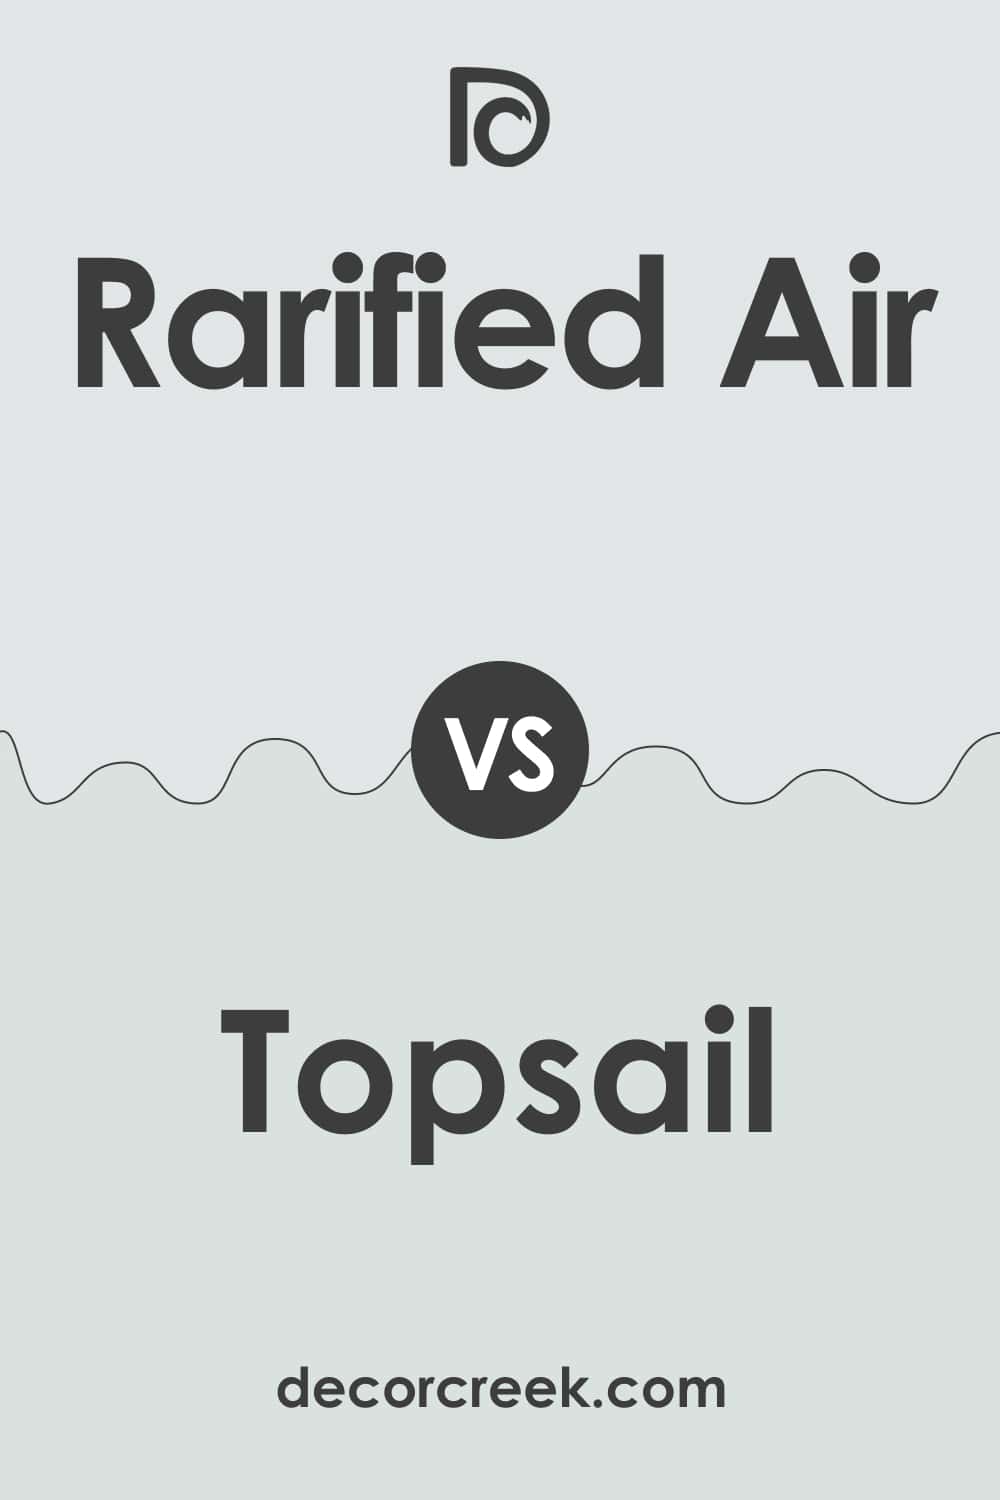 Rarified Air vs Topsail